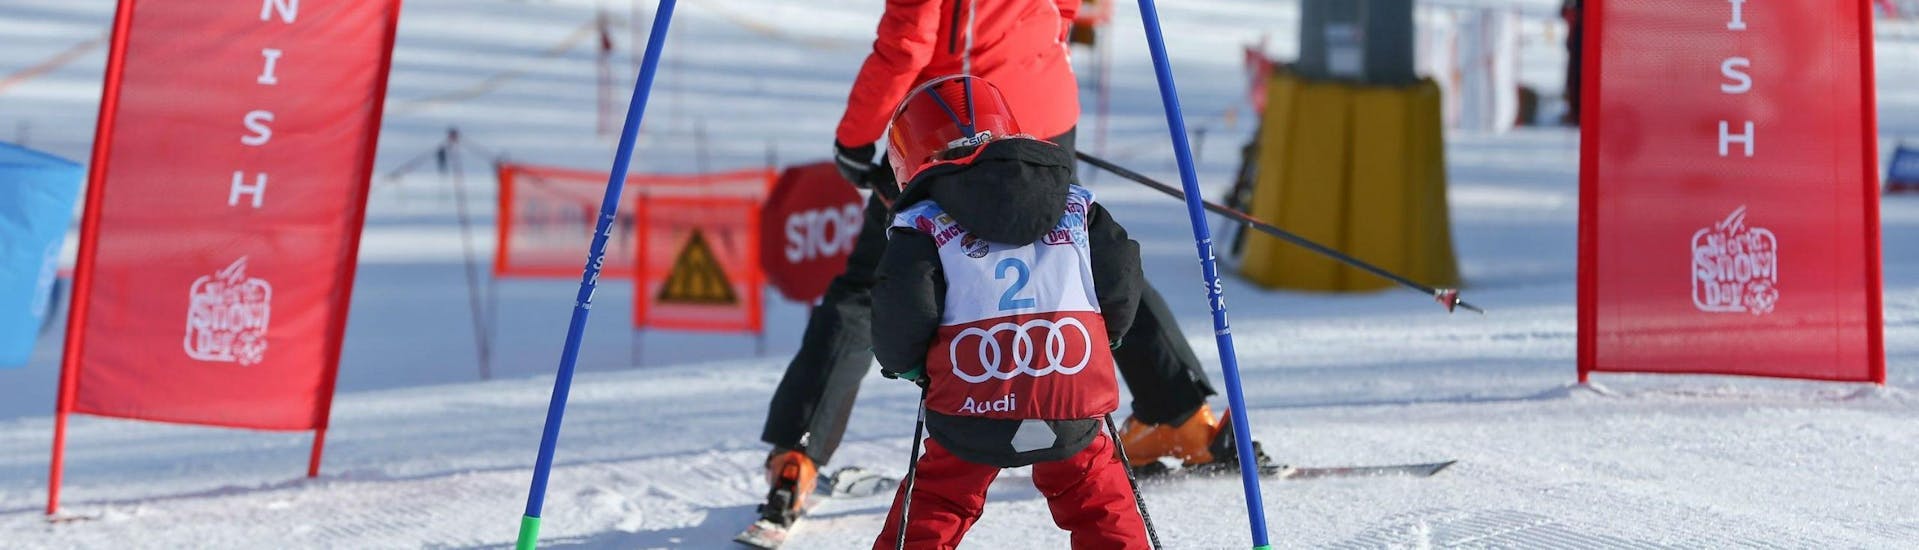 Un jeune enfant travaille sa technique de ski sur un parcours de course à Cortina d'Ampezzo pendant l'un des cours de ski pour enfants "Smart" (4-12 ans) pour skieurs expérimentés organisés par l'école de ski Scuola Sci Cortina.